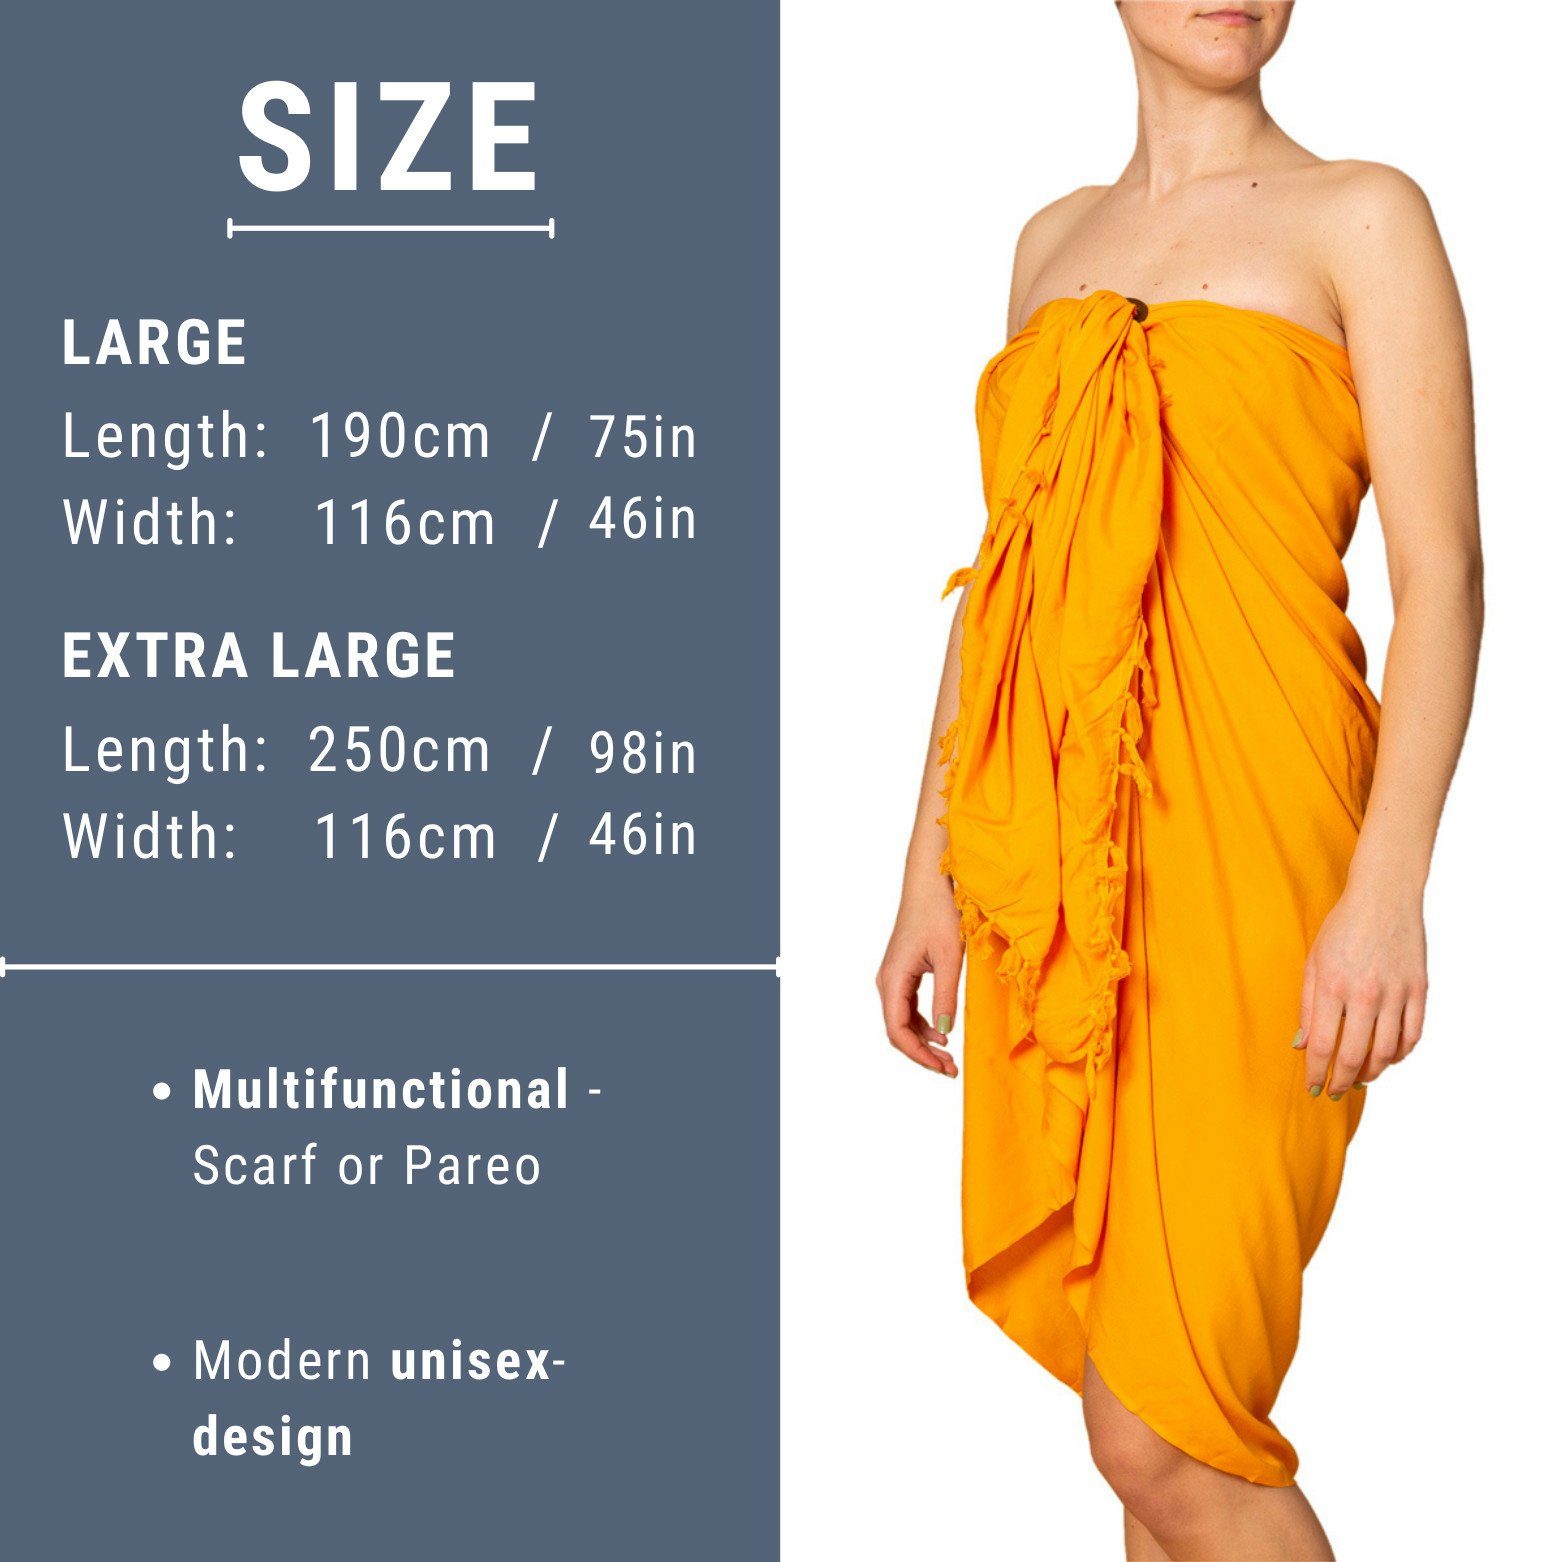 Schultertuch Halstuch Strandkleid Tuch gelb-orange den Strandrock, oder einfarbig Größen für in Strandtuch Schal Strand Sarong PANASIAM als 2 Cover-up Pareo Bikini